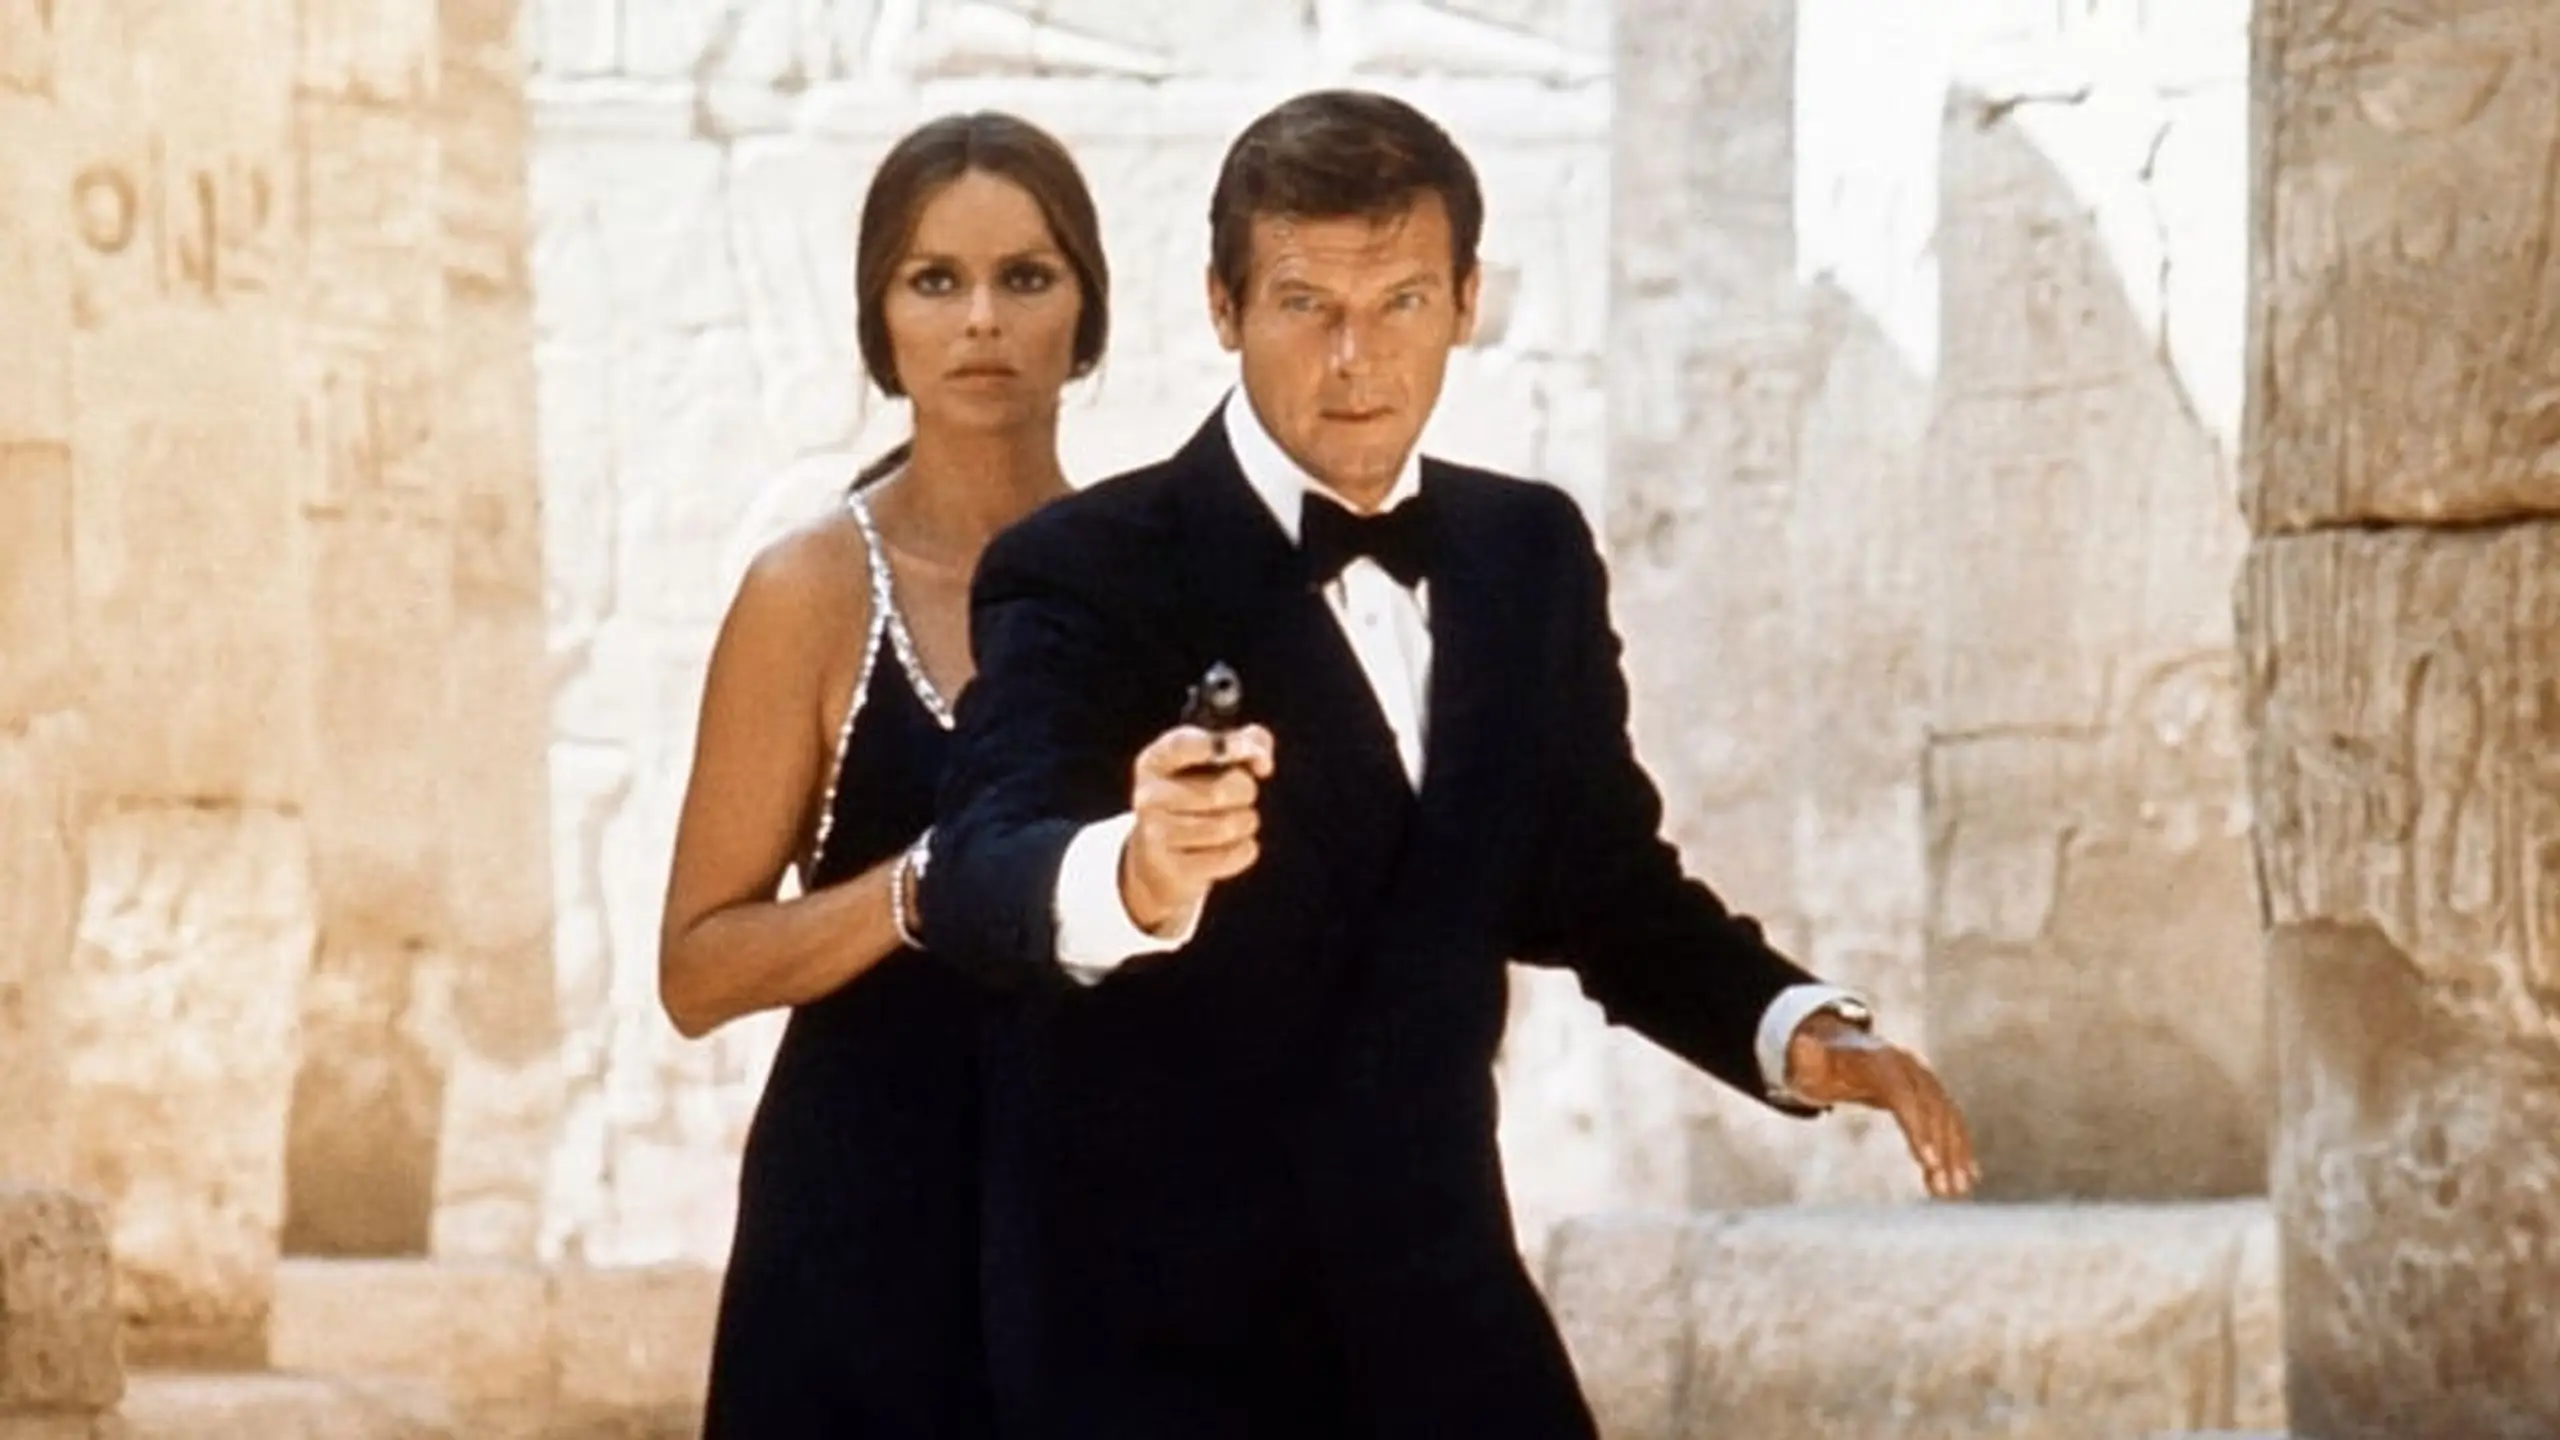 James Bond 007 - Der Spion, der mich liebte